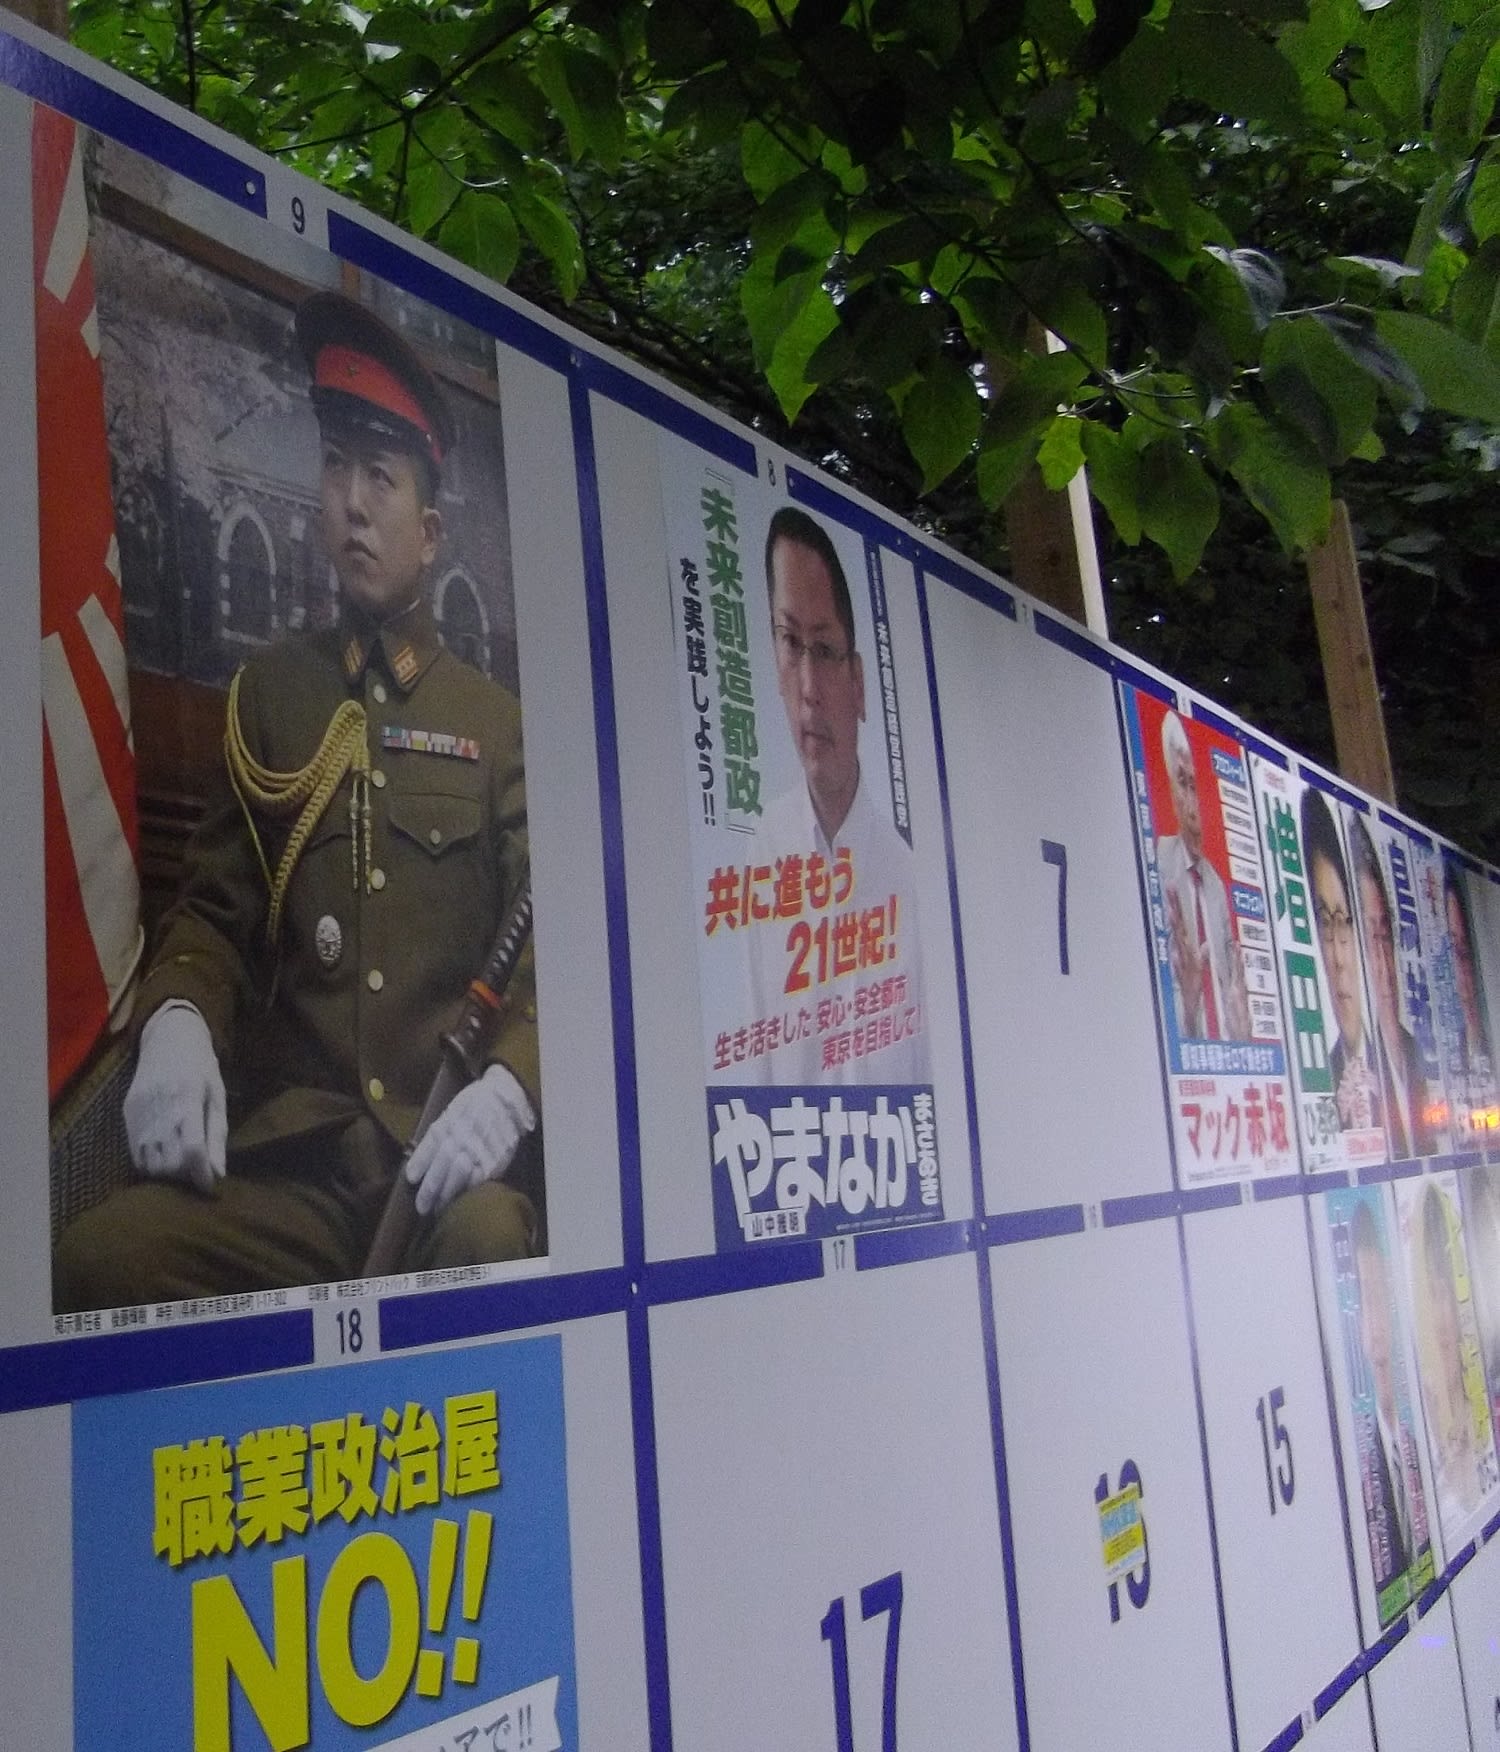 皇居前に 軍服姿で 名も政策もない男性のポスターが張られる事態が